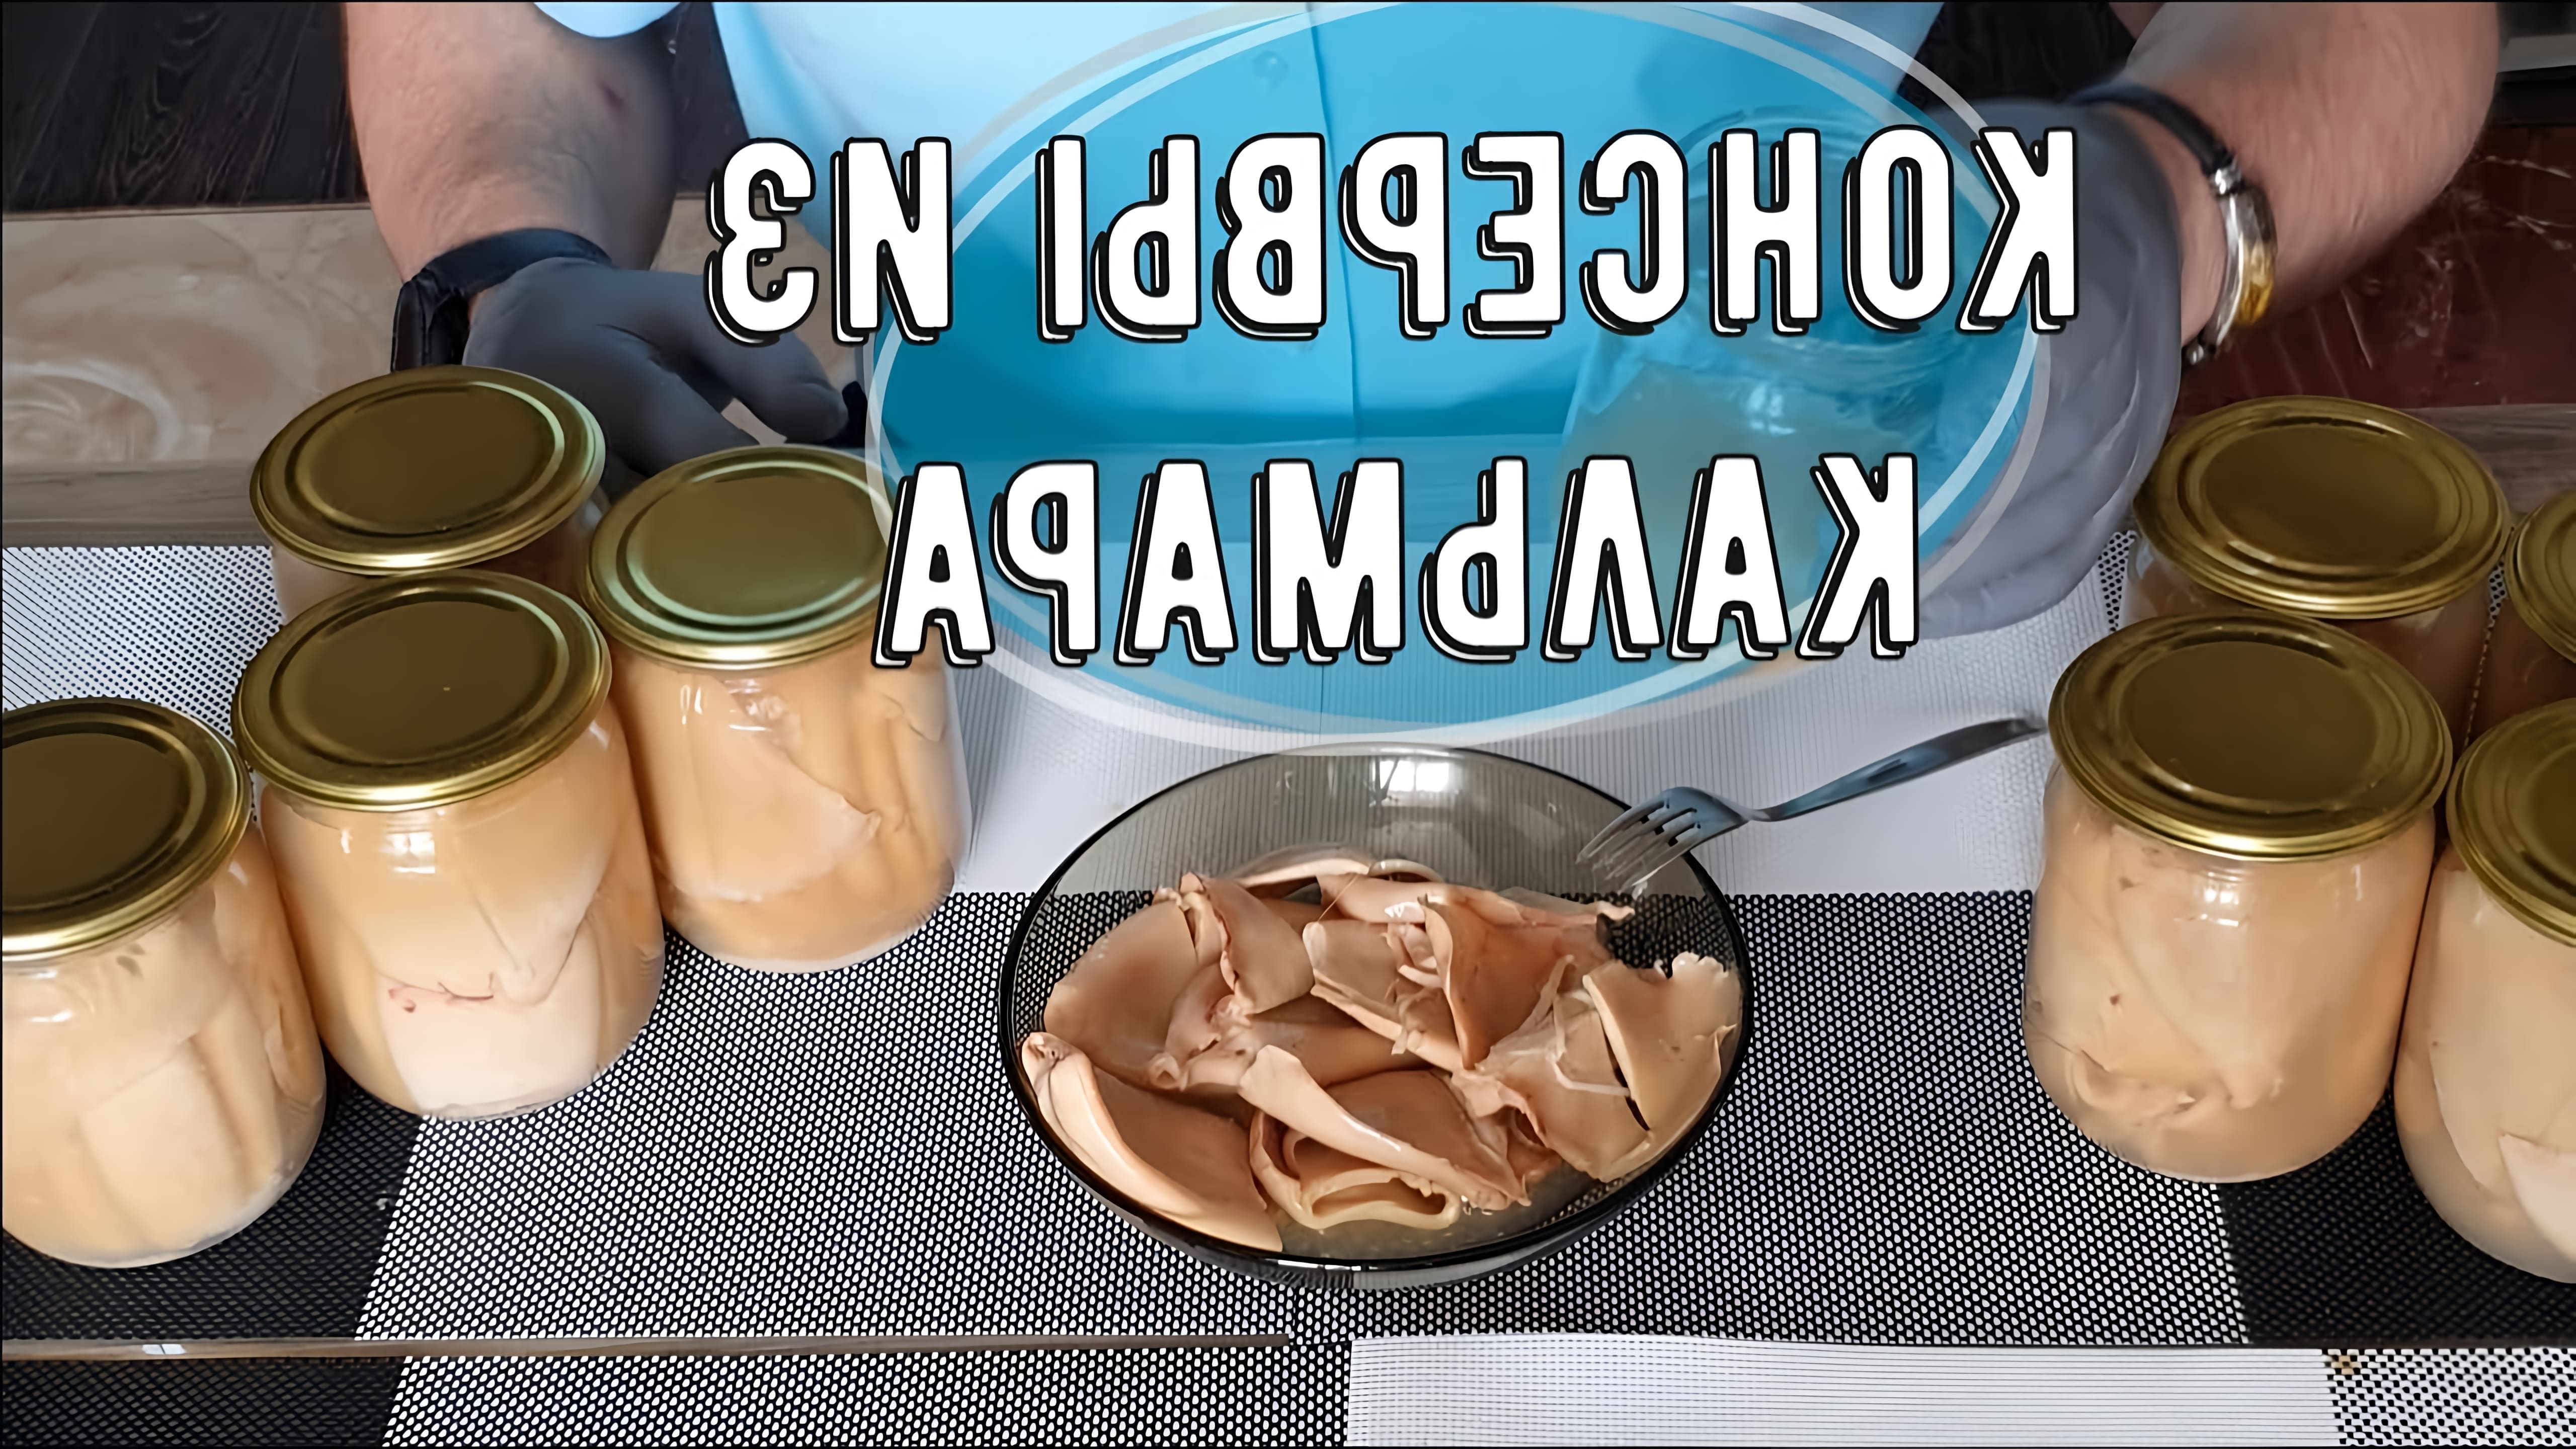 В данном видео демонстрируется процесс приготовления консервированного кальмара в домашних условиях